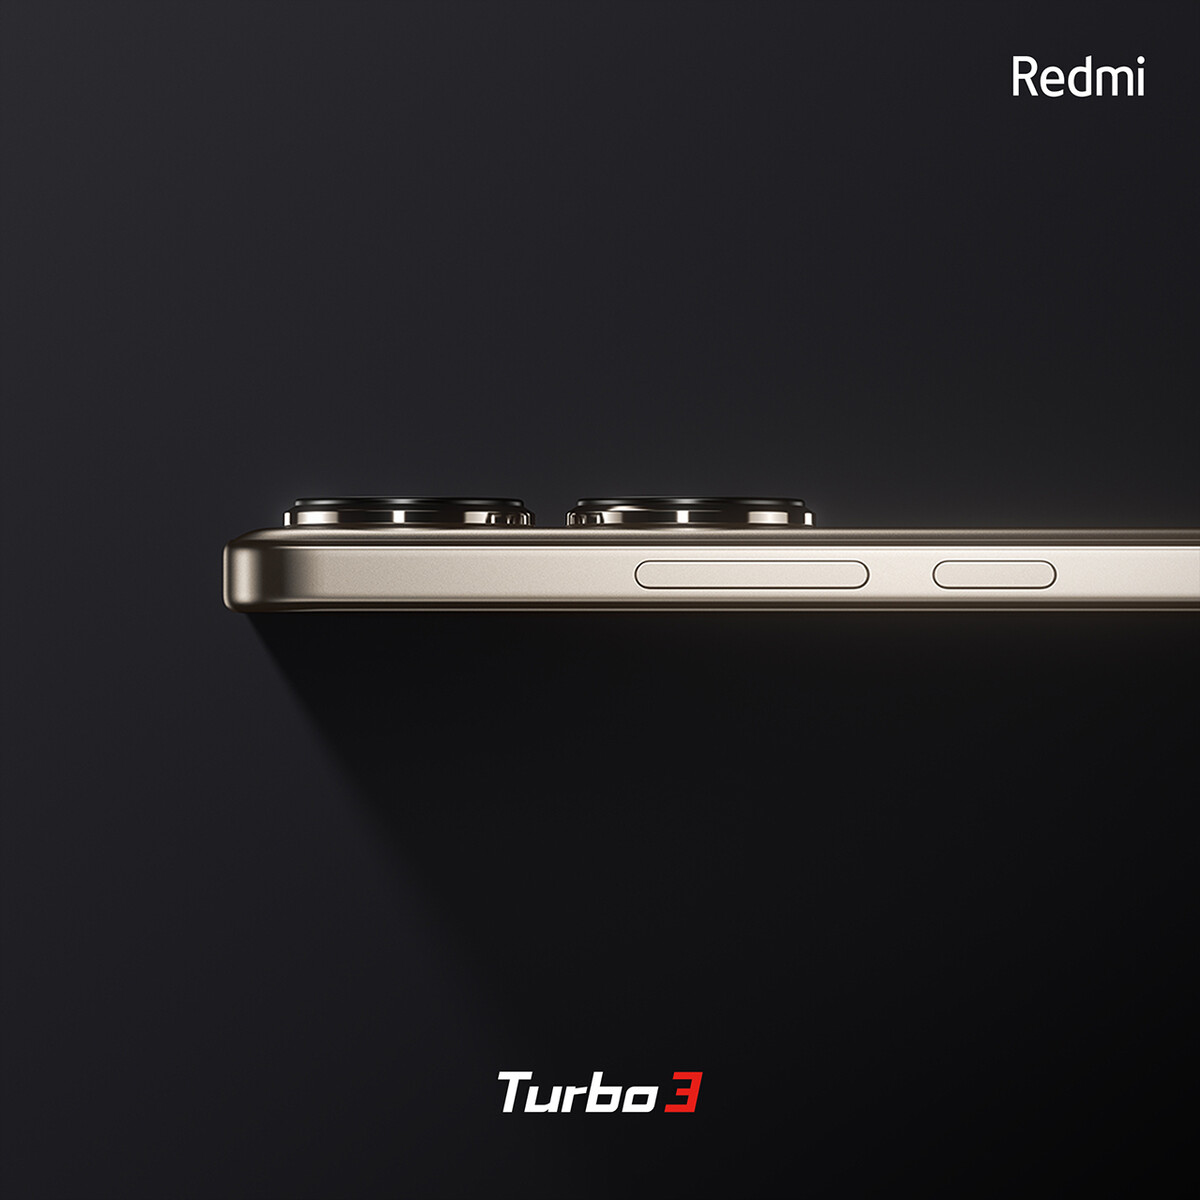 Redmi Turbo 3 Hadirkan Layar dengan Tingkat Kecerahan 2400 nits, Berikut Ulasan Spesifikasinya   